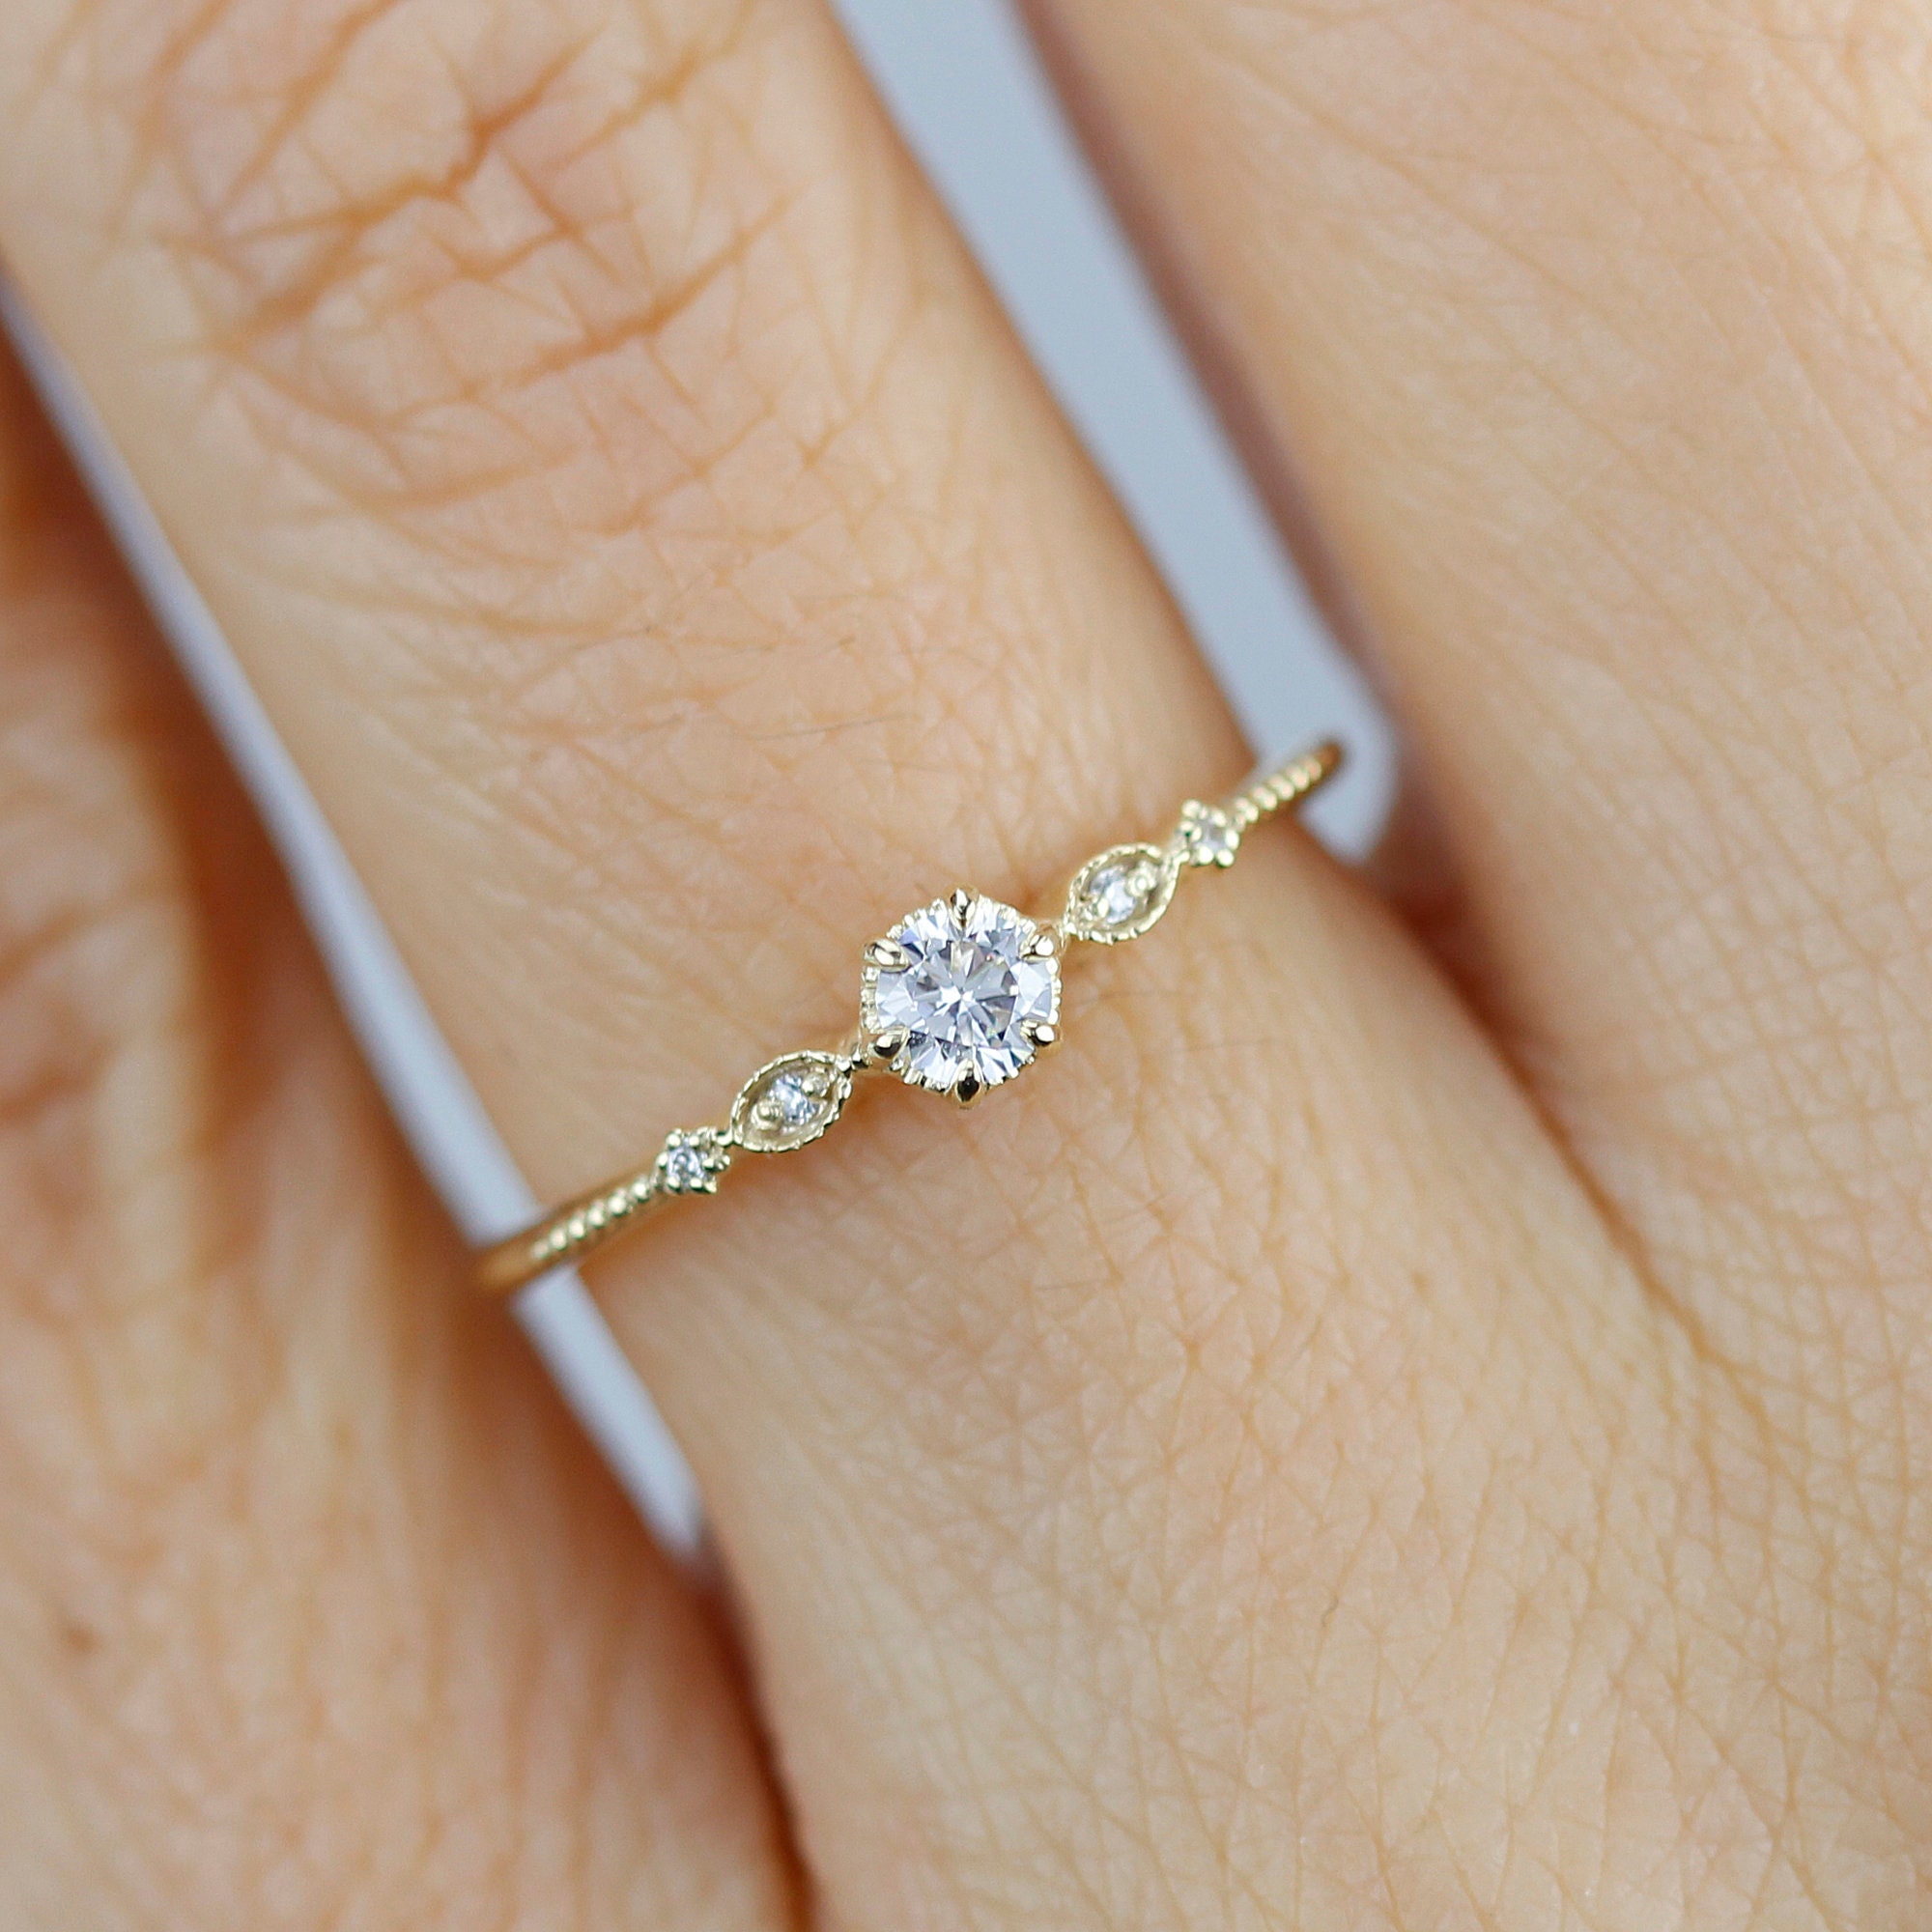 What makes simple engagement rings popular? - BAUNAT